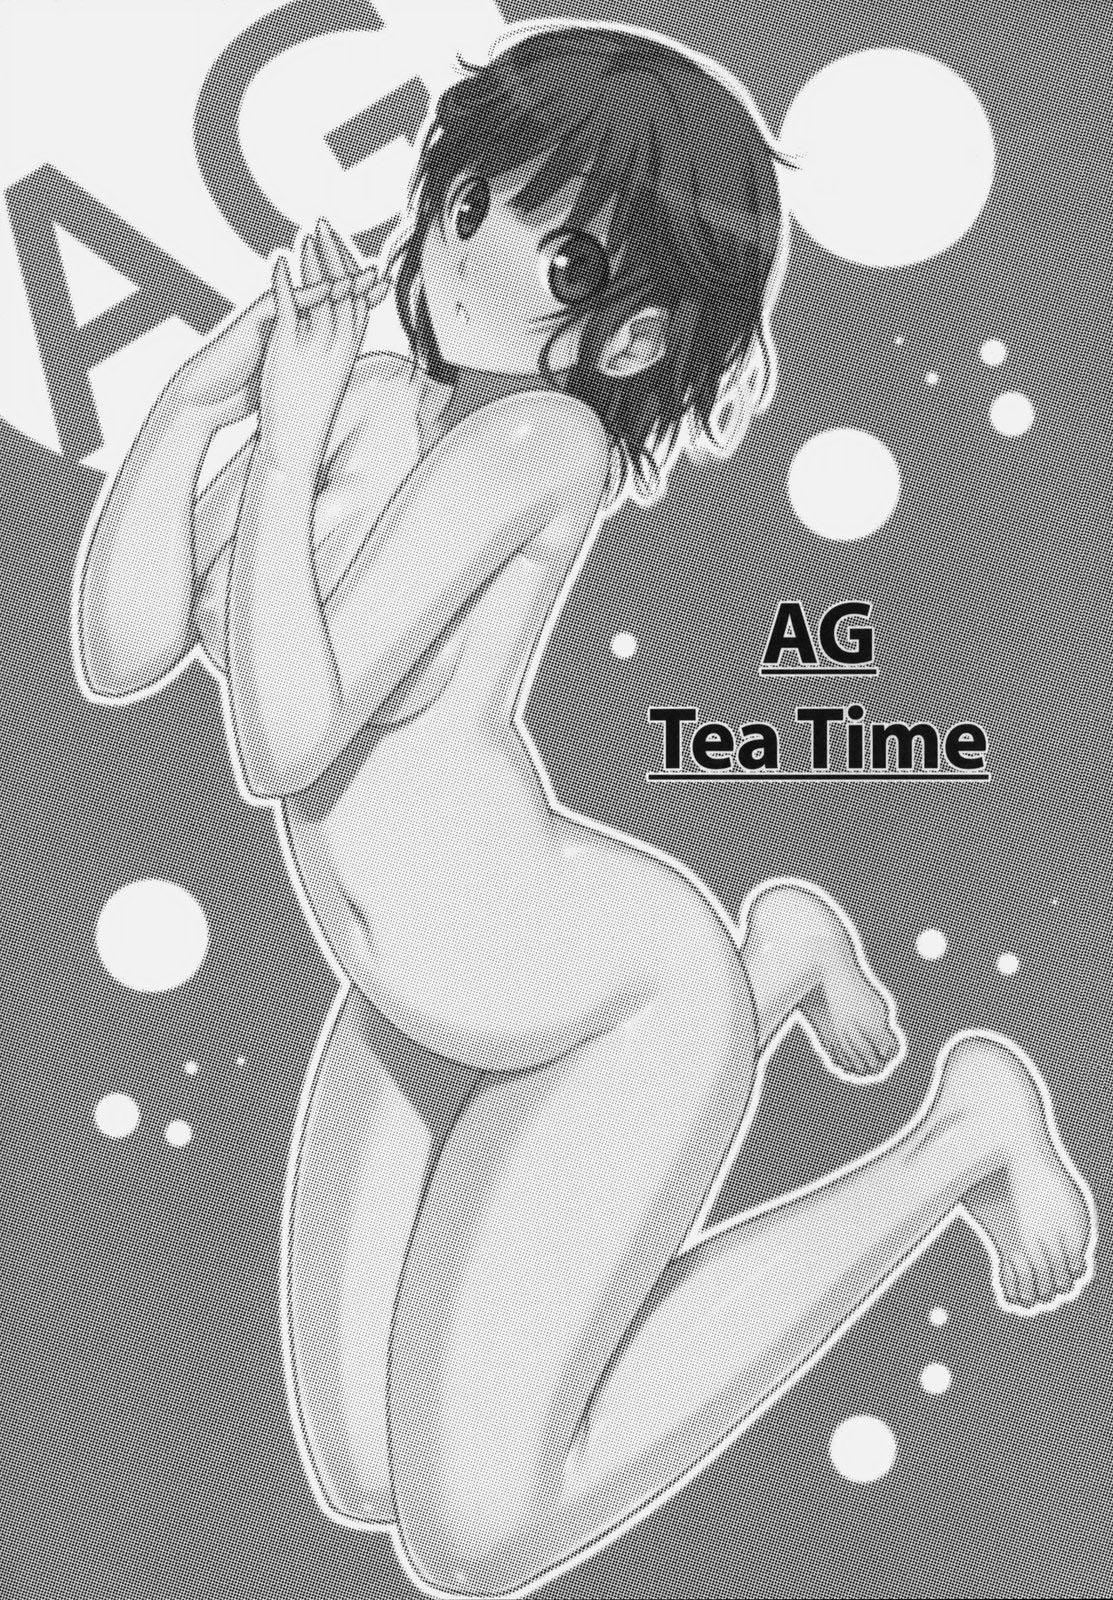 AG Tea Time 1